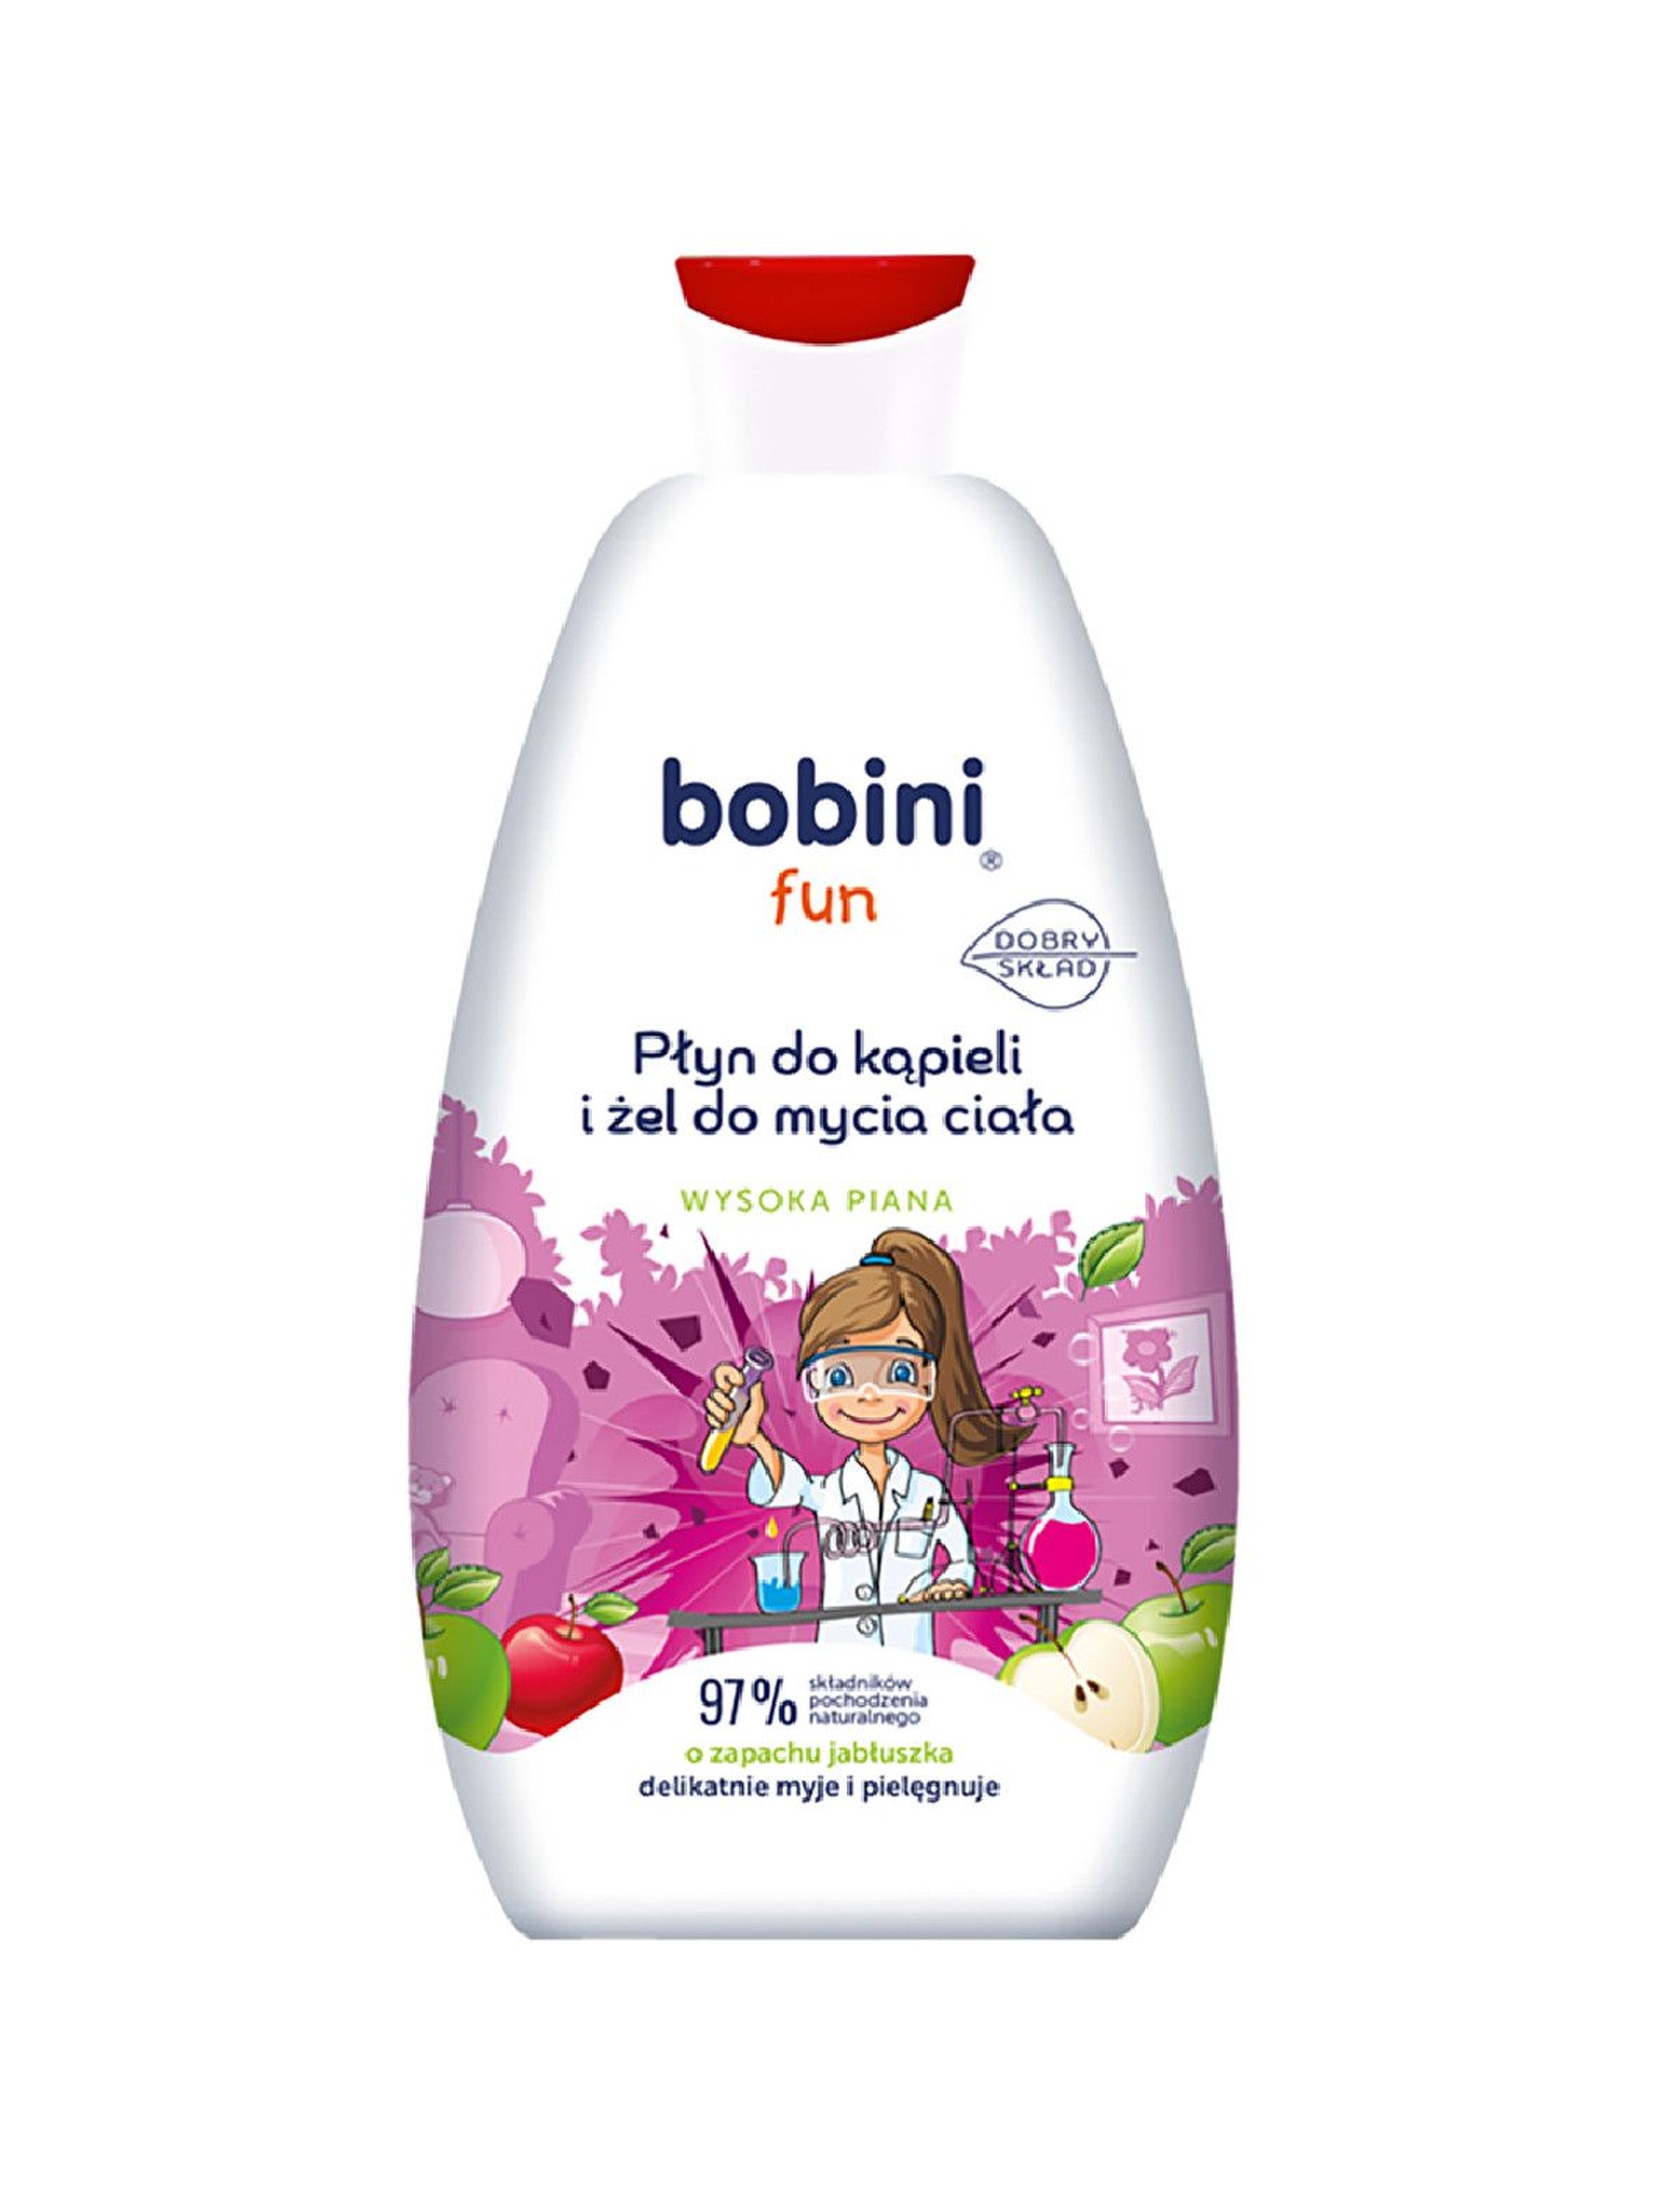 BOBINI Fun Płyn do kąpieli i żel do mycia - o zapachu jabłuszka - Wysoka piana 500 ml